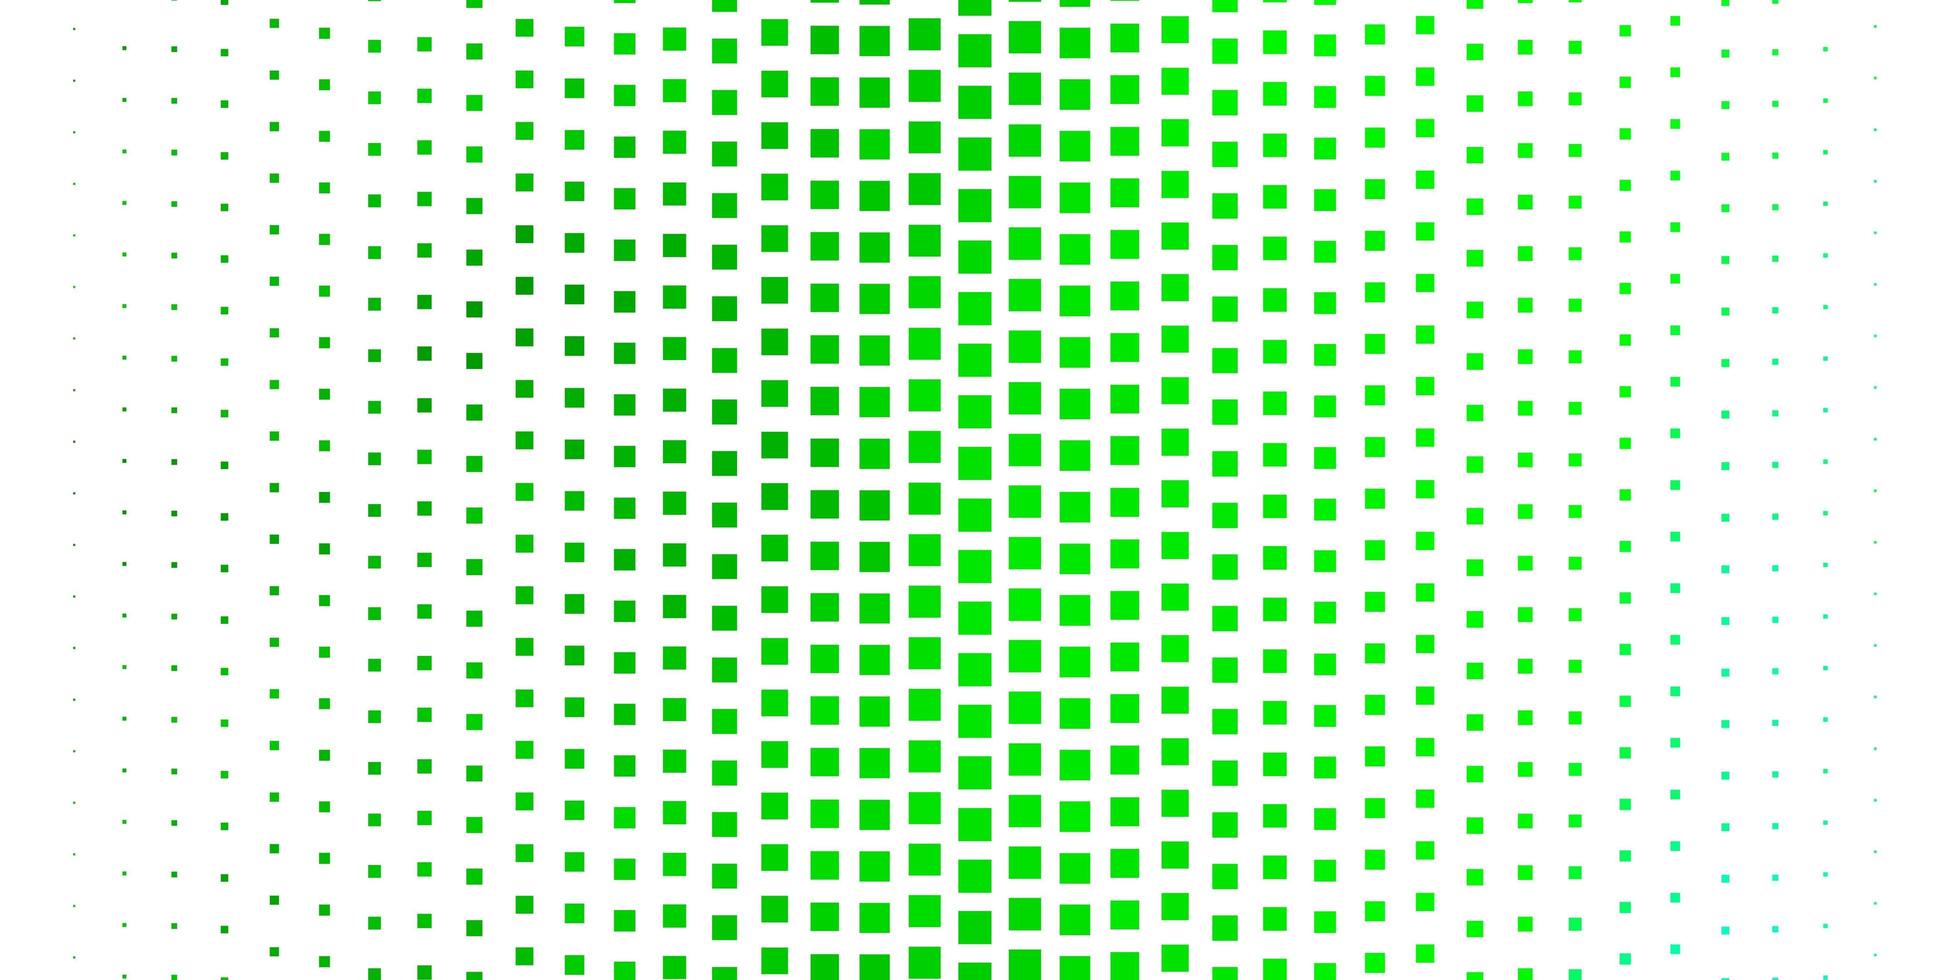 fond de vecteur vert foncé dans un style polygonal. illustration abstraite de dégradé avec des rectangles colorés. modèle pour les téléphones portables.